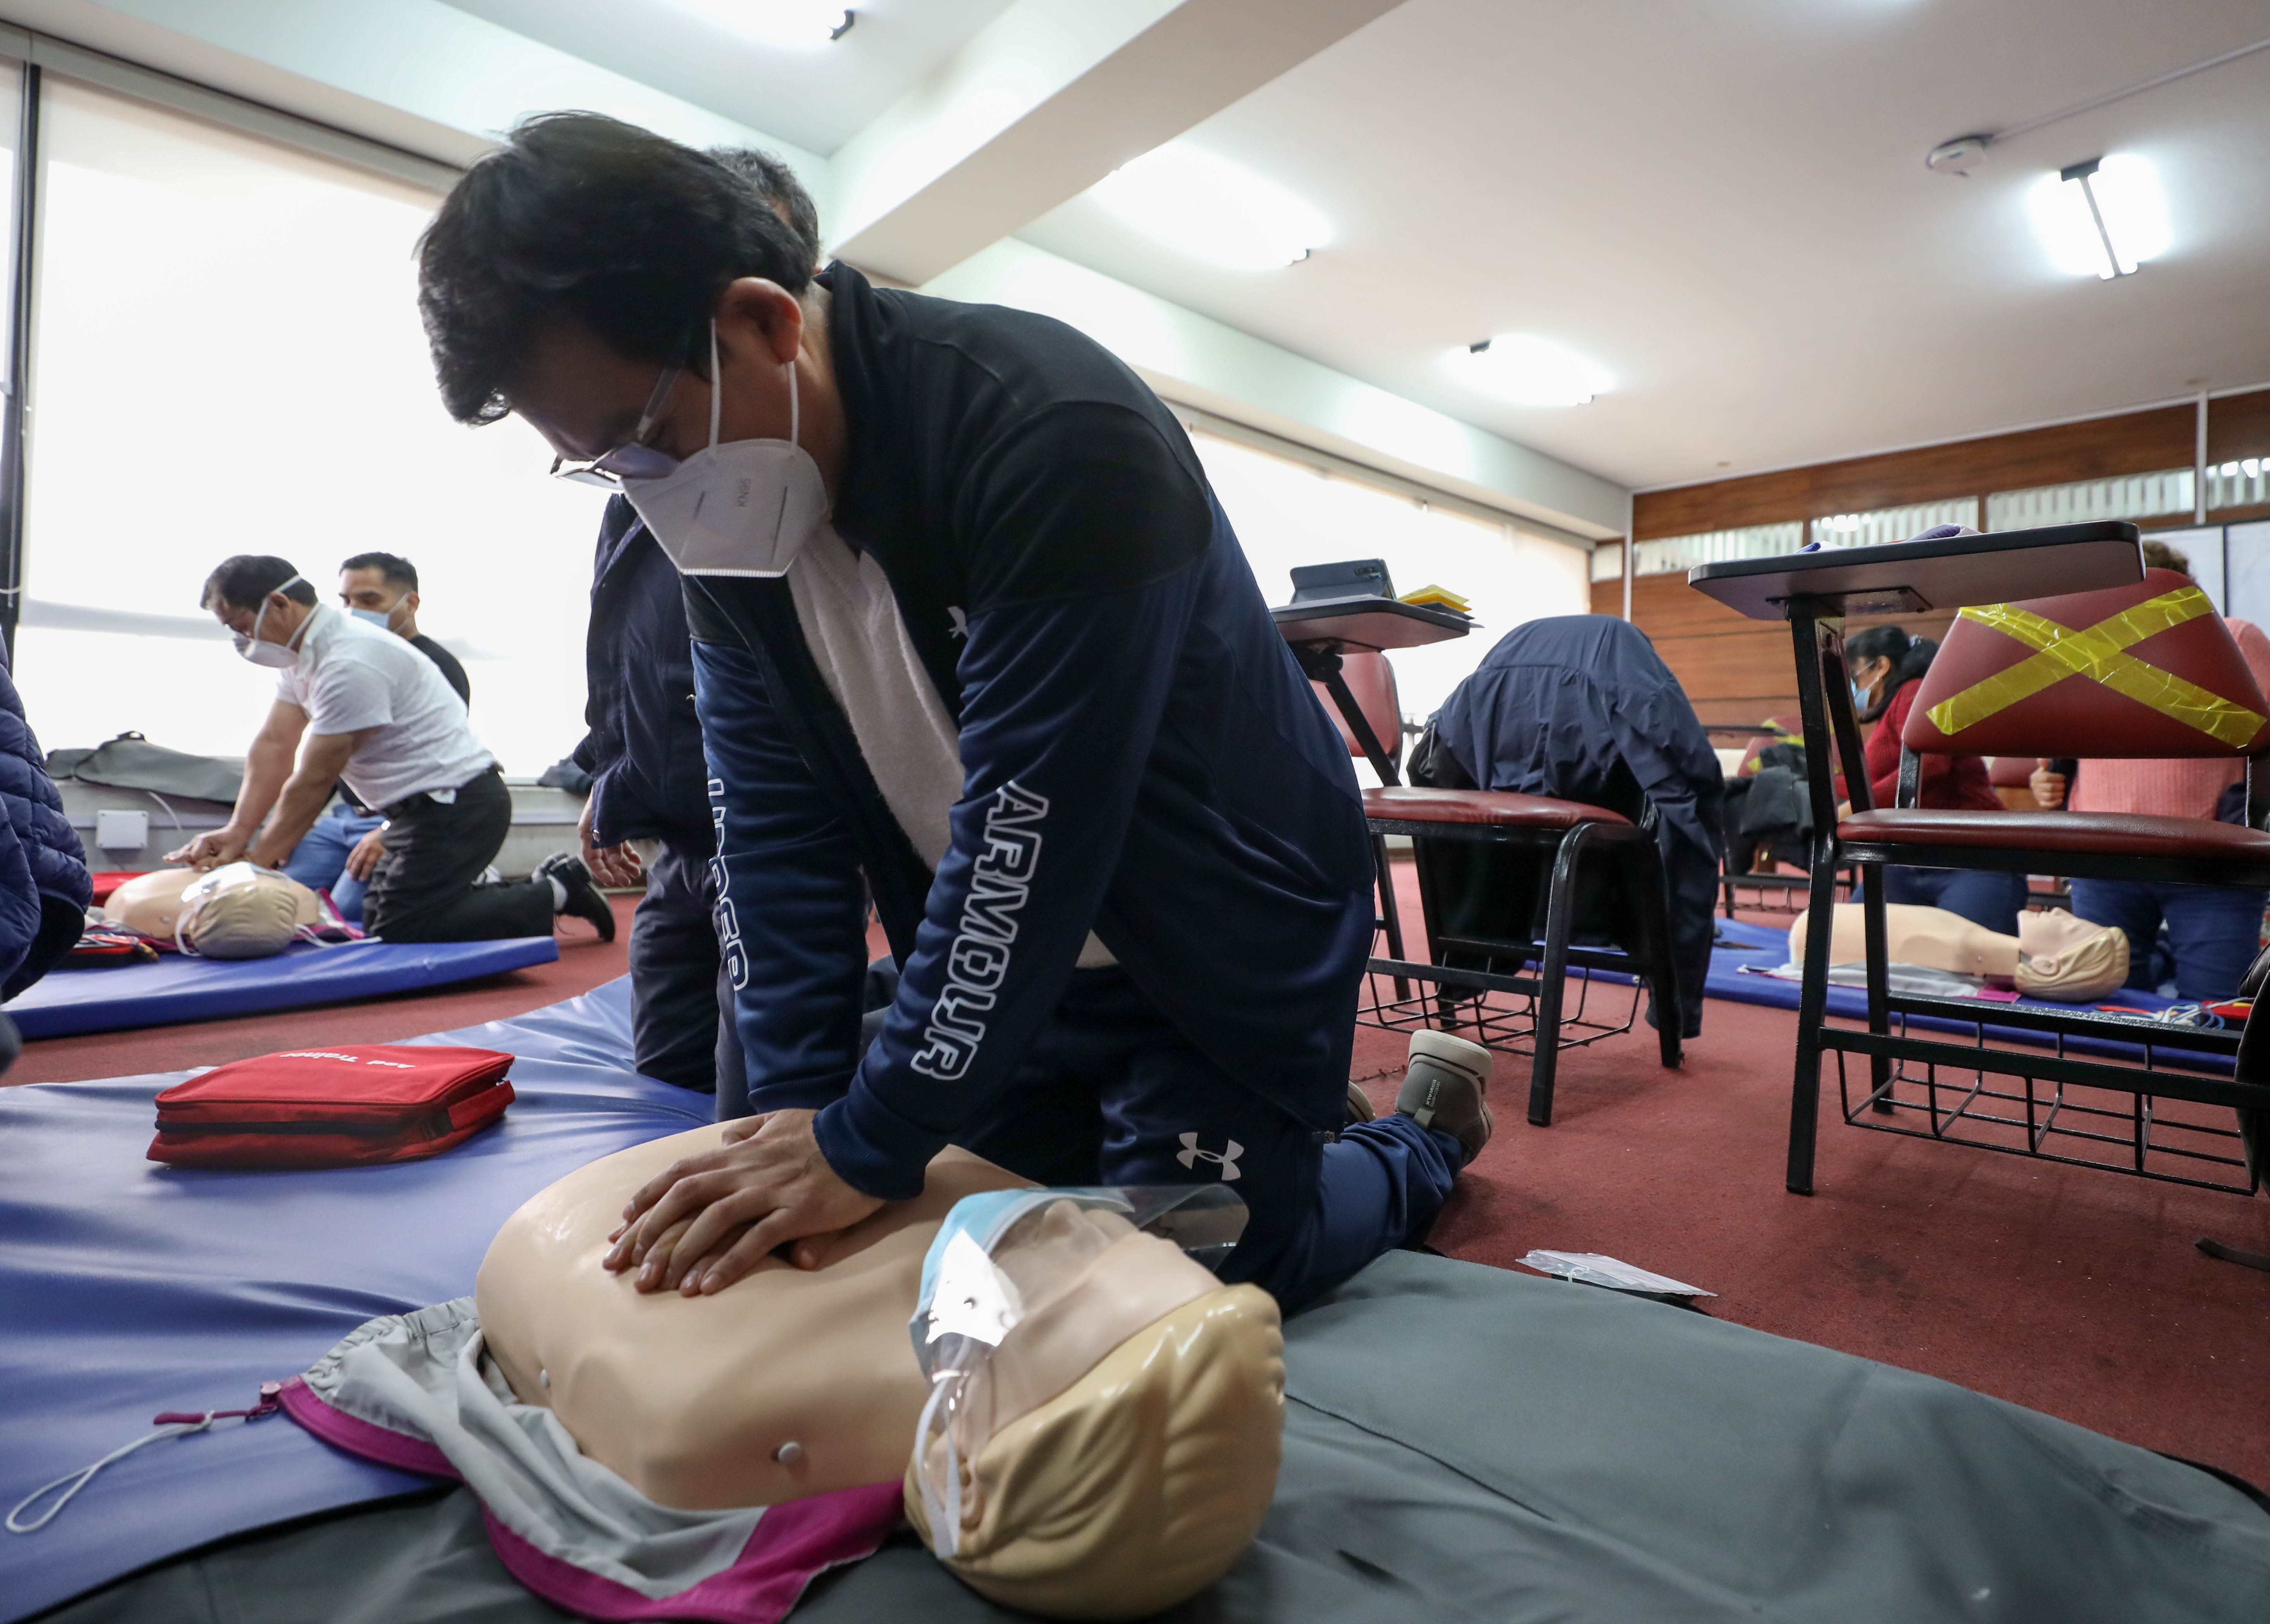 Essalud - EsSalud: Escuela de Emergencia capacitó a más de 1,790 profesionales de varias regiones en primeros auxilios, atención básica de desastres y más